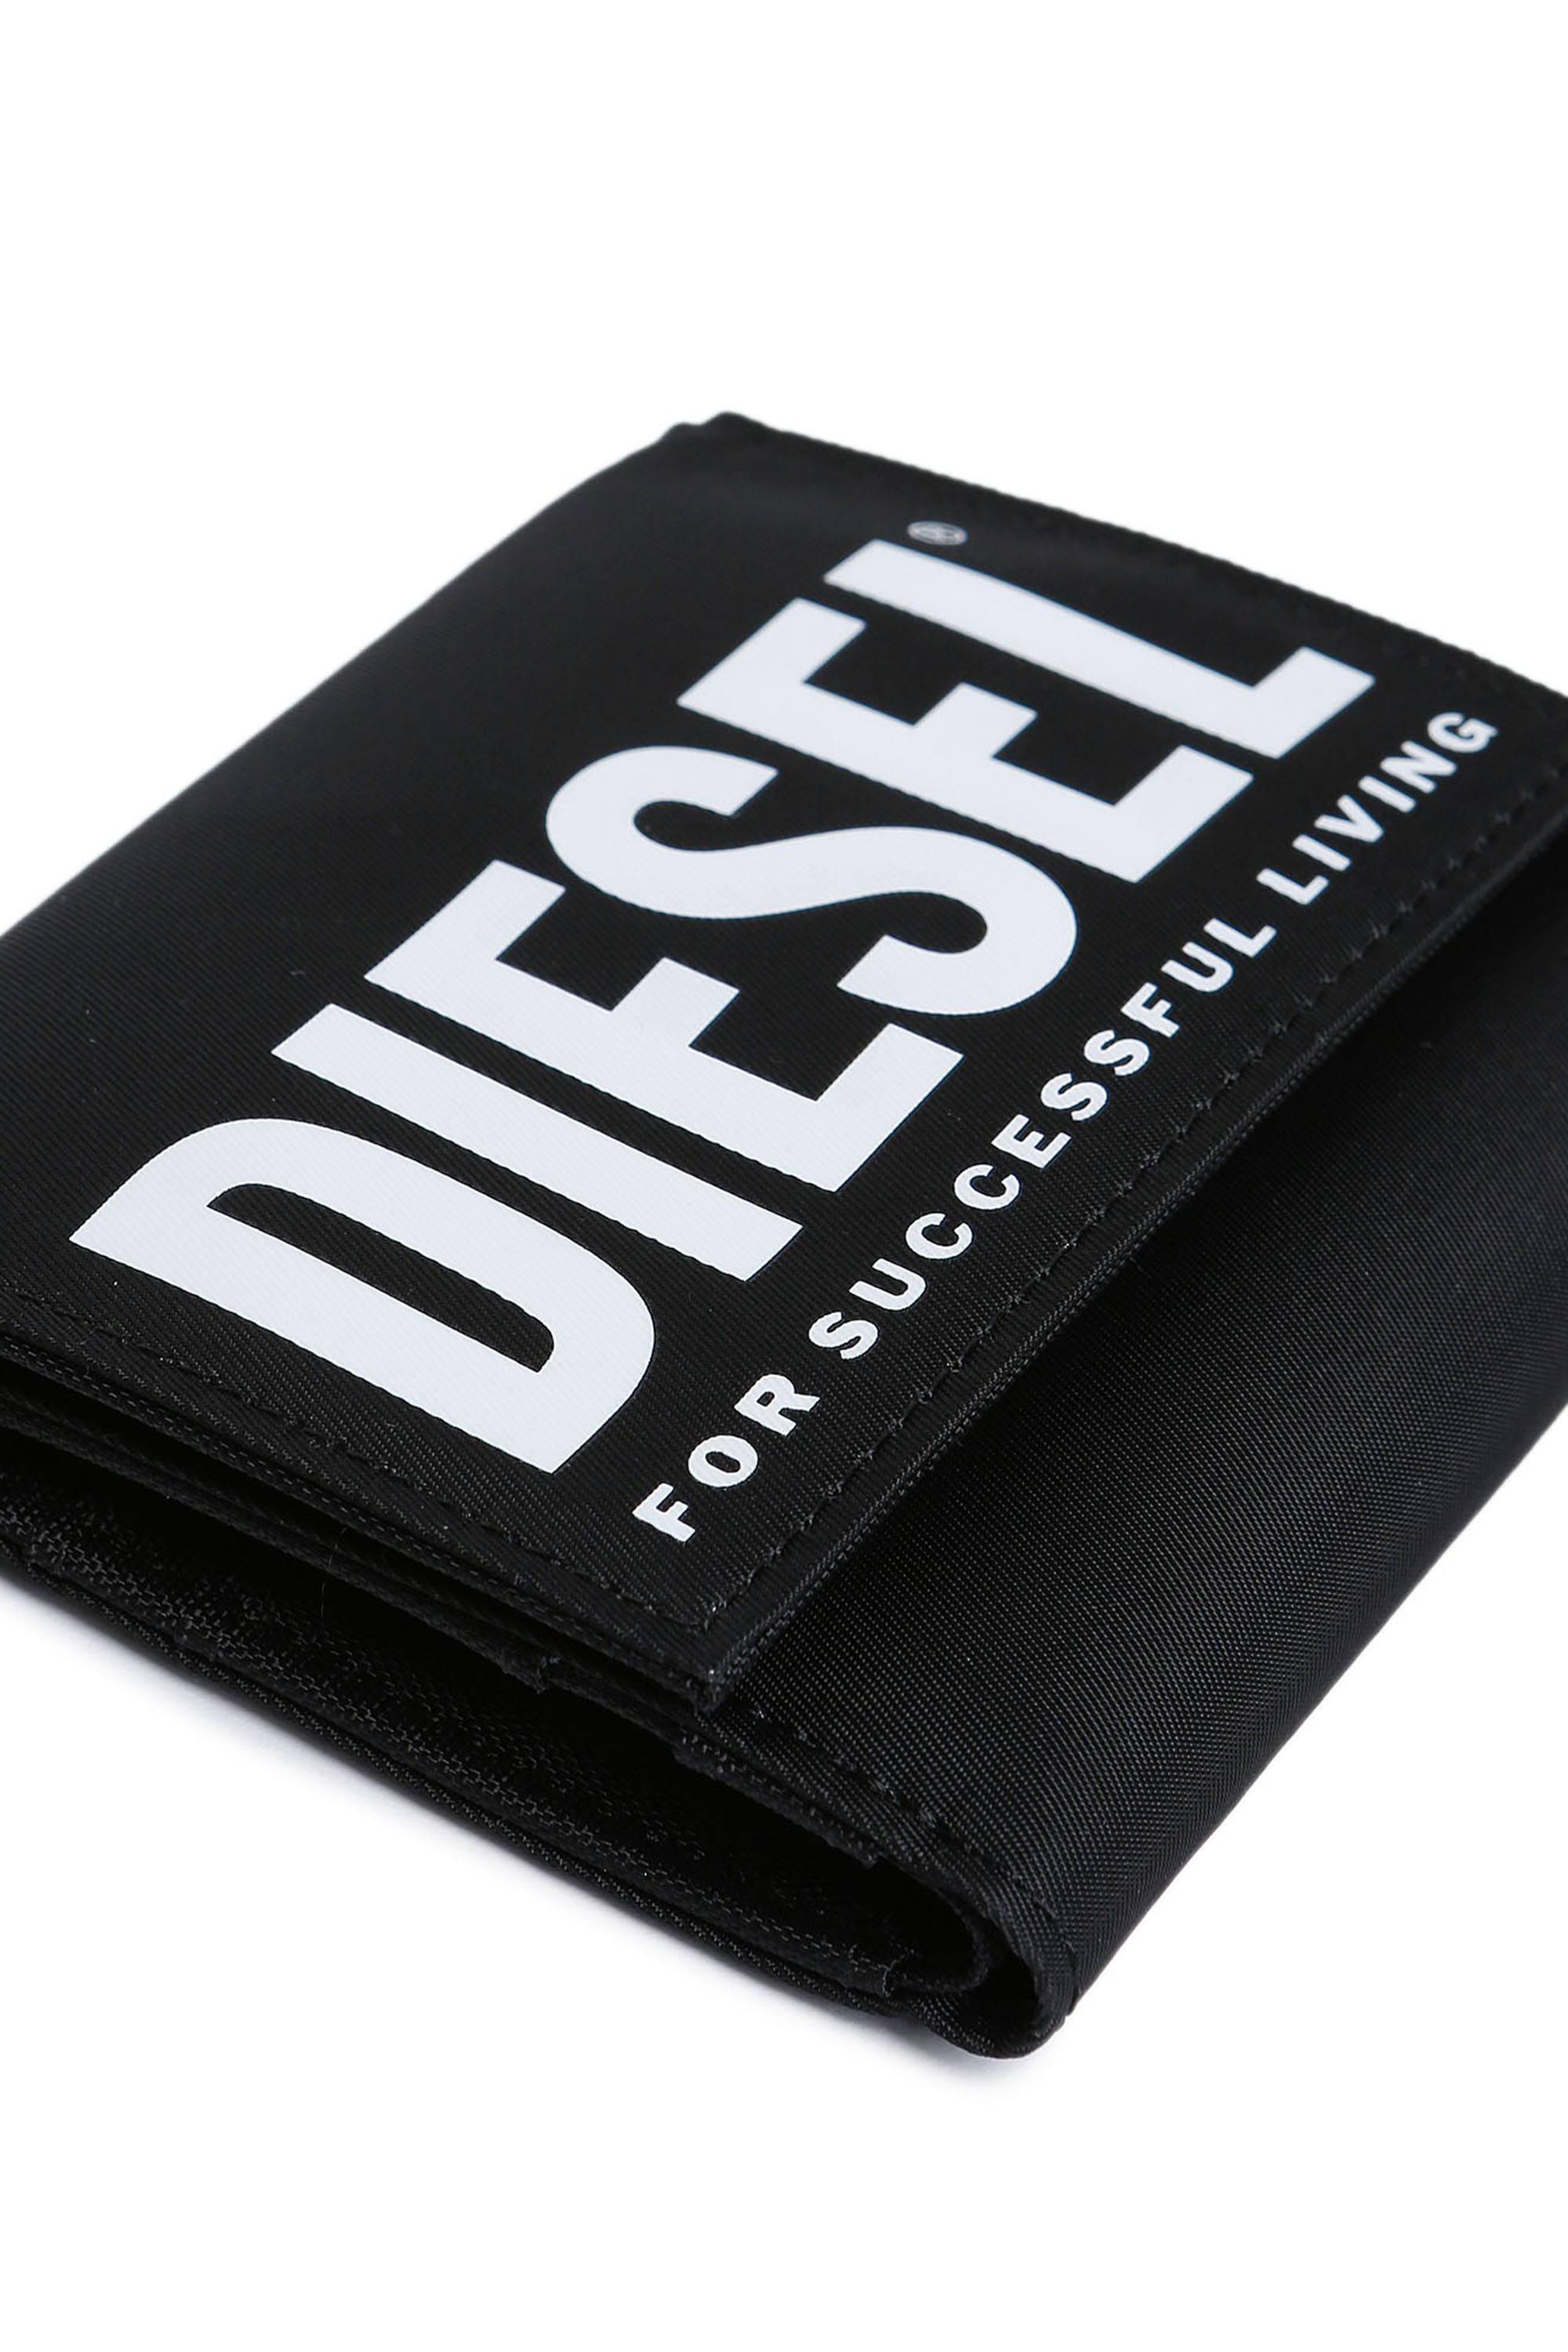 Diesel - YOSHINOBOLD, Black - Image 4